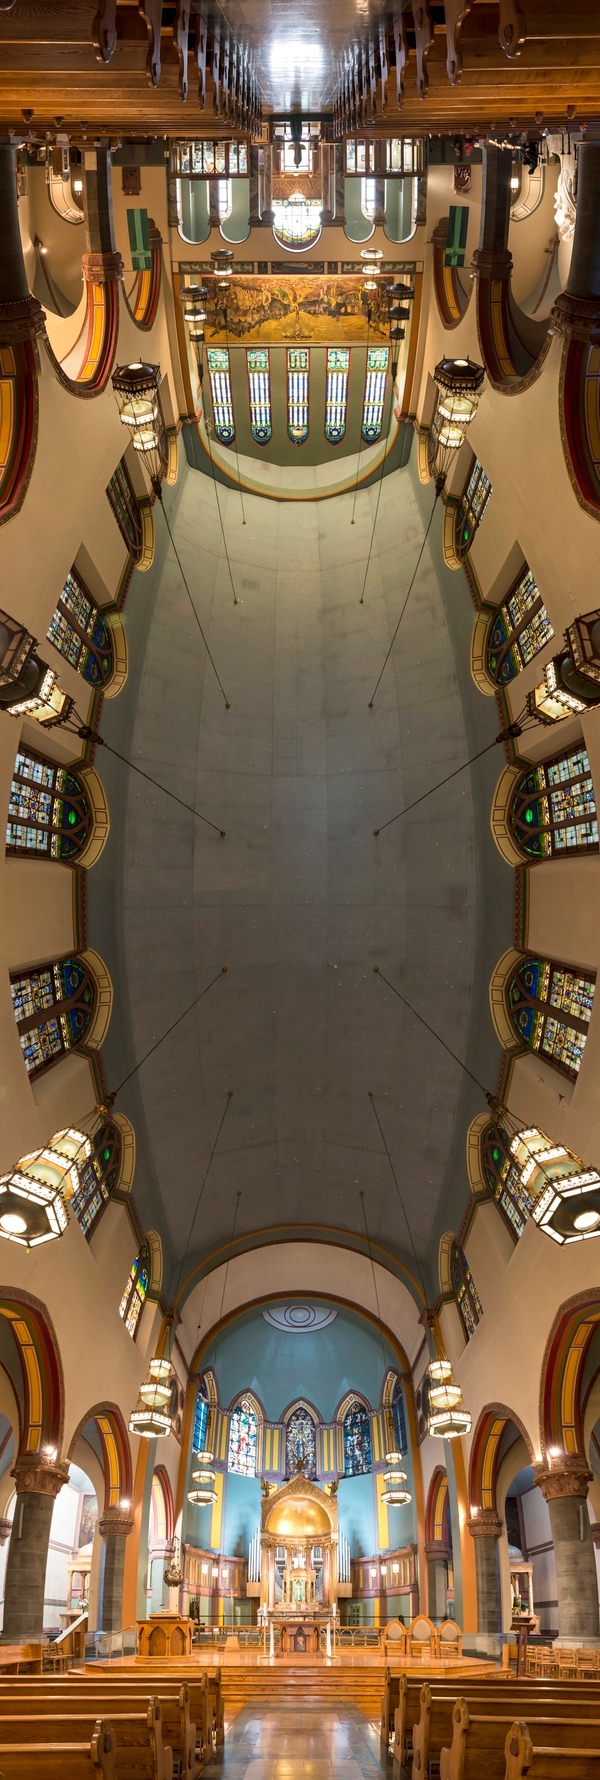 6. Фотография из серии вертикальных панорам храмов Нью-Йорка